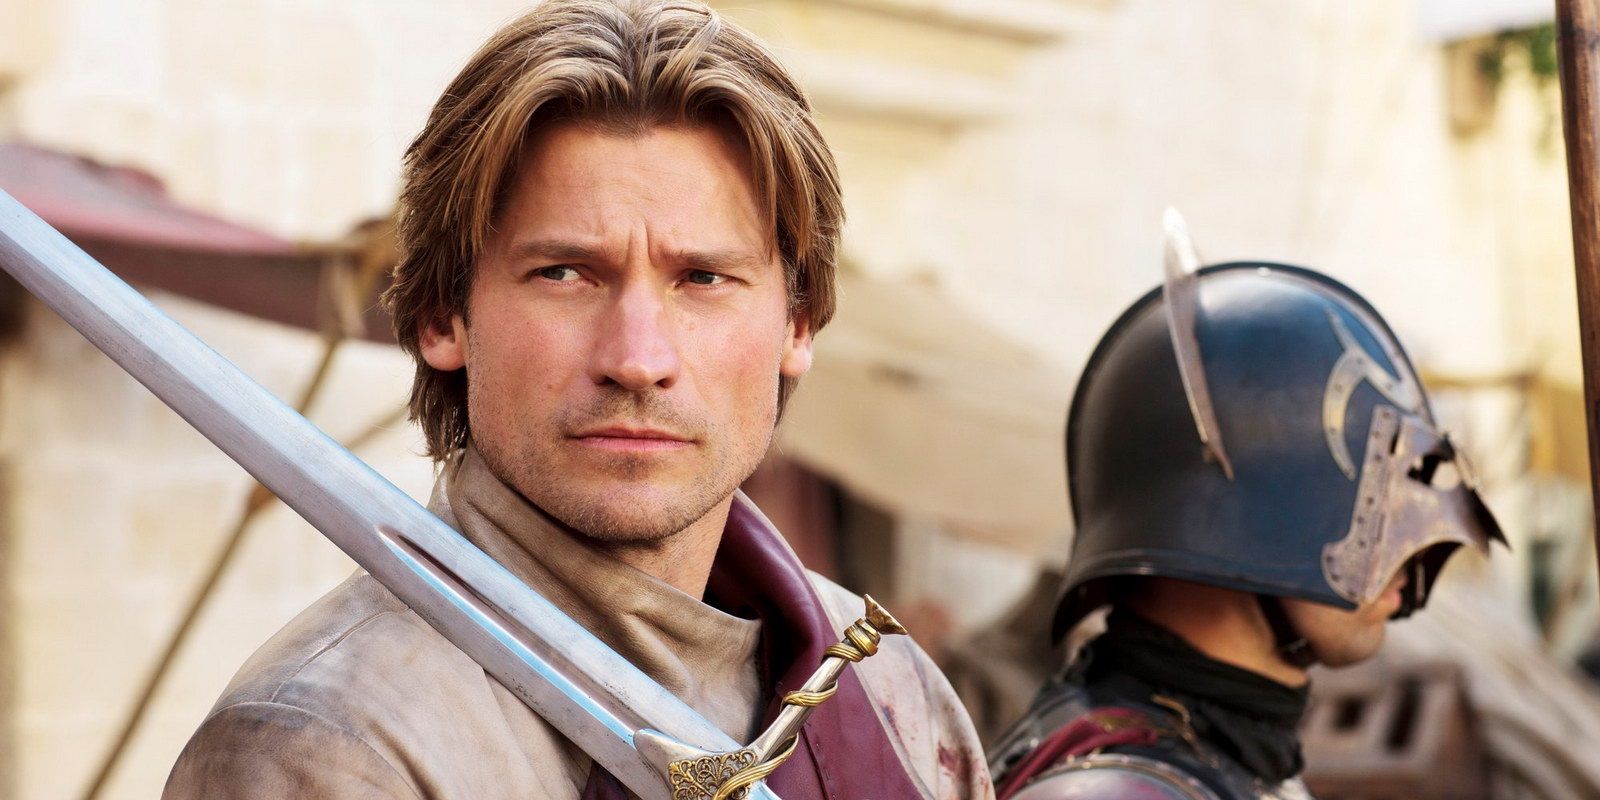 Jaime Lannister played by Nikolaj Coster-Waldau wielding his sword on Game of Thrones